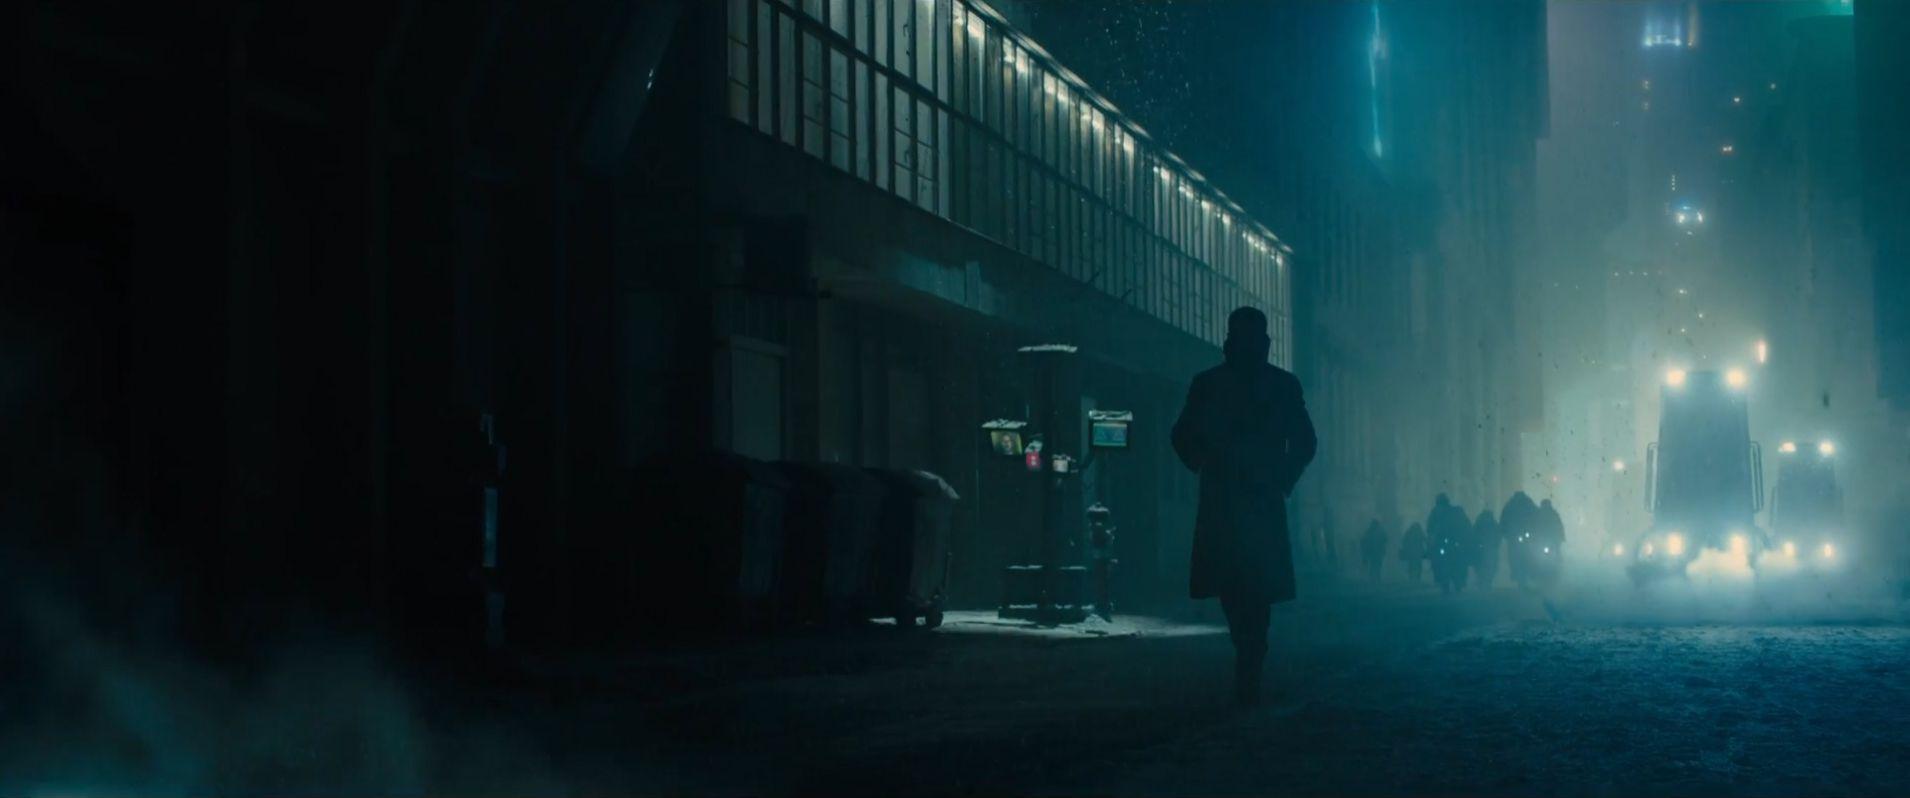 Blade Runner 49 Wallpapers Top Free Blade Runner 49 Backgrounds Wallpaperaccess